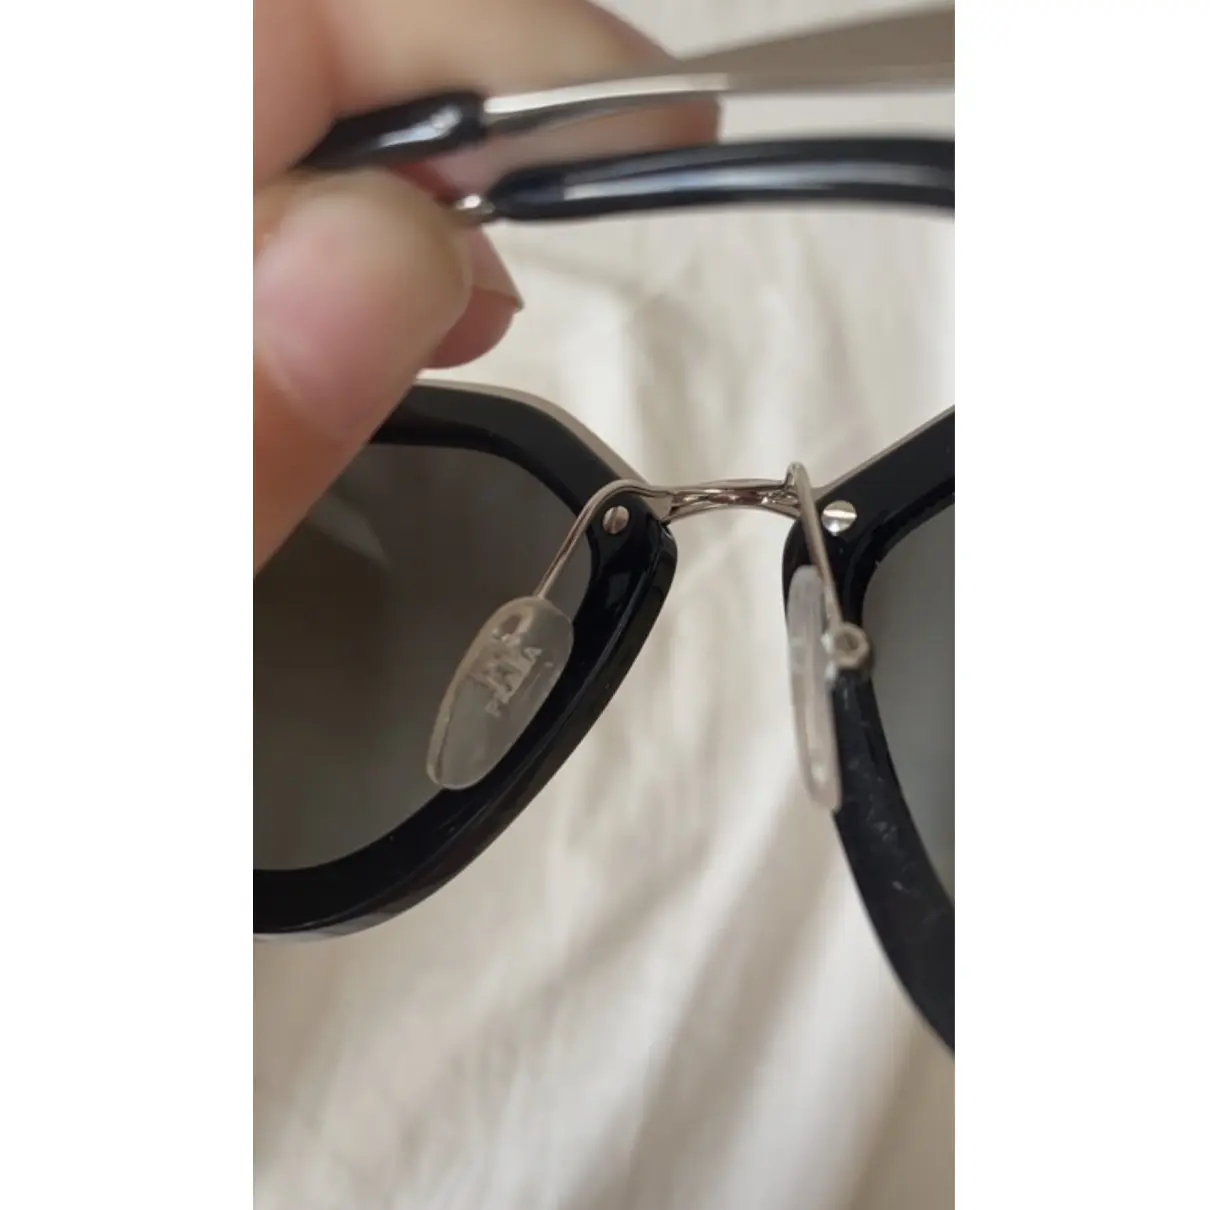 Luxury Prada Sunglasses Women